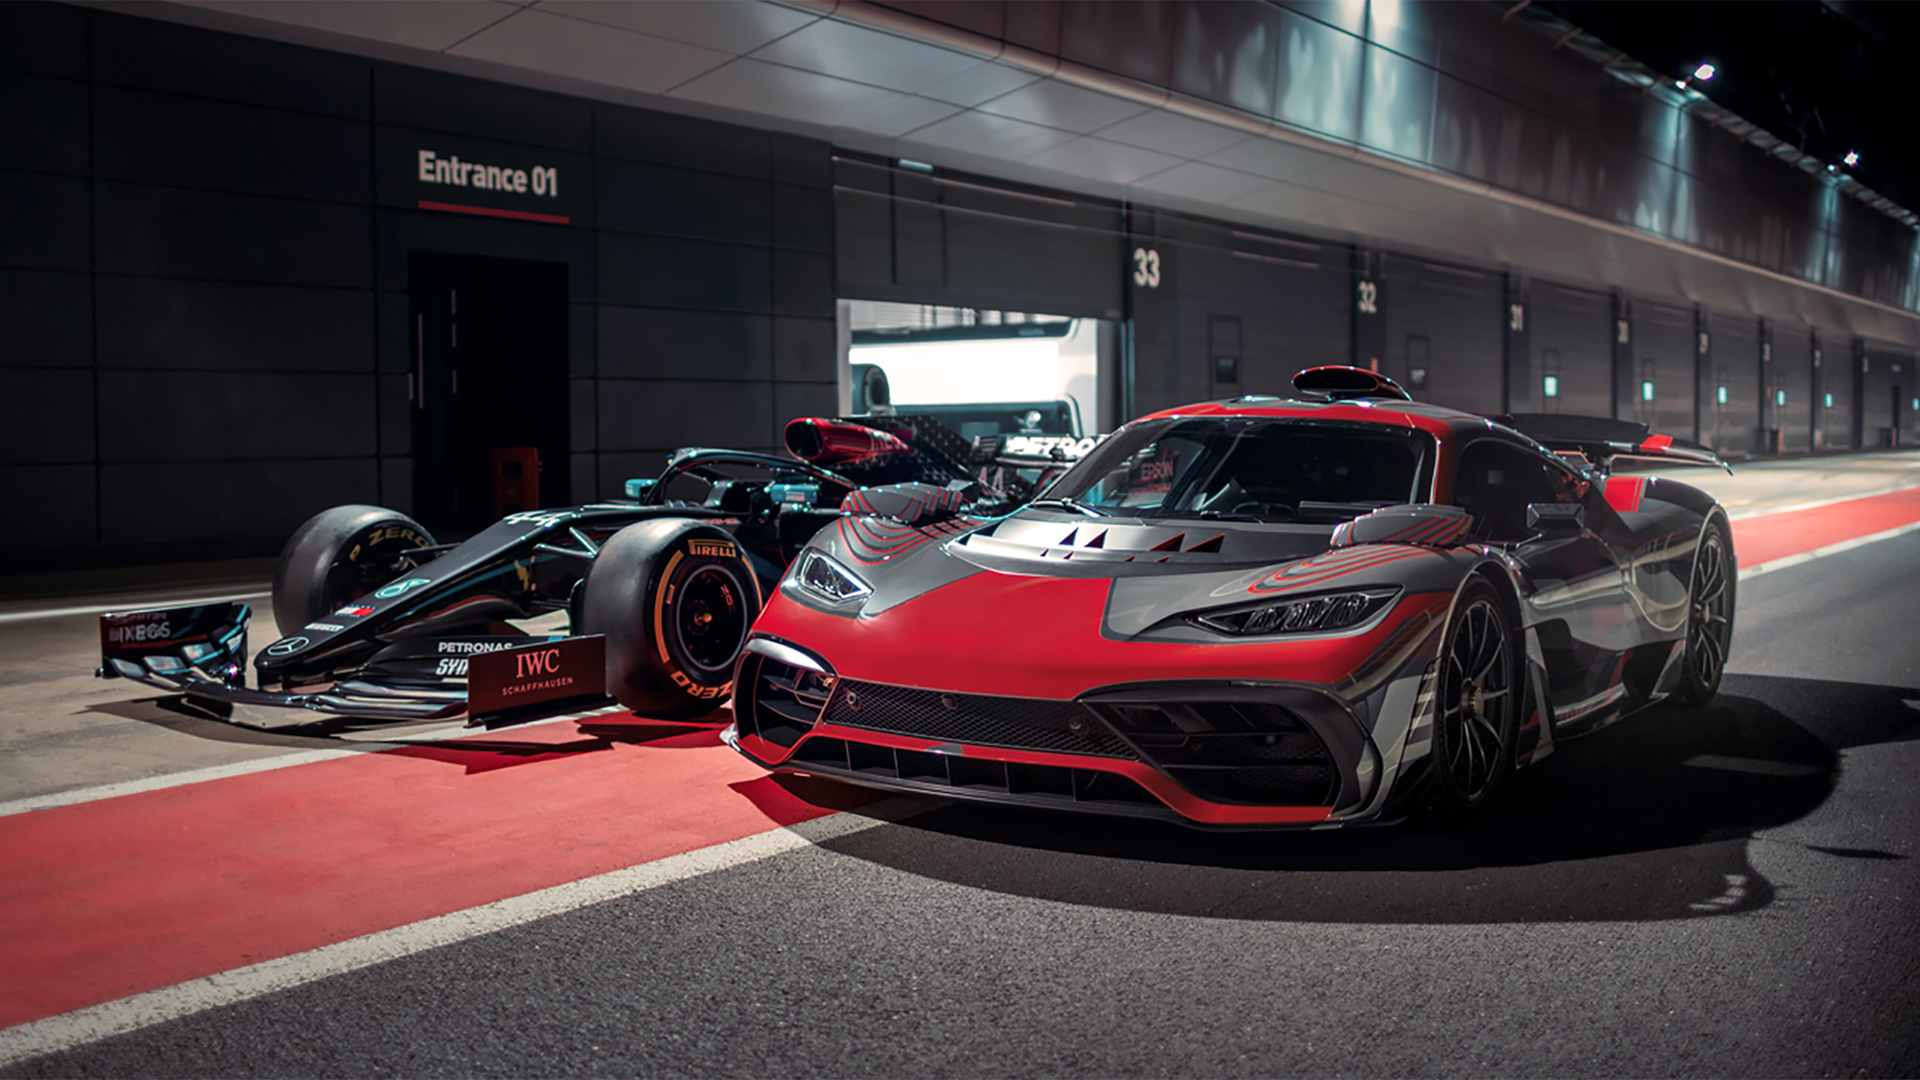 El Mercedes AMG Project One y el Mercedes W12 de Fórmula 1 de 2021. Ambos tienen la misma concepción mecánica